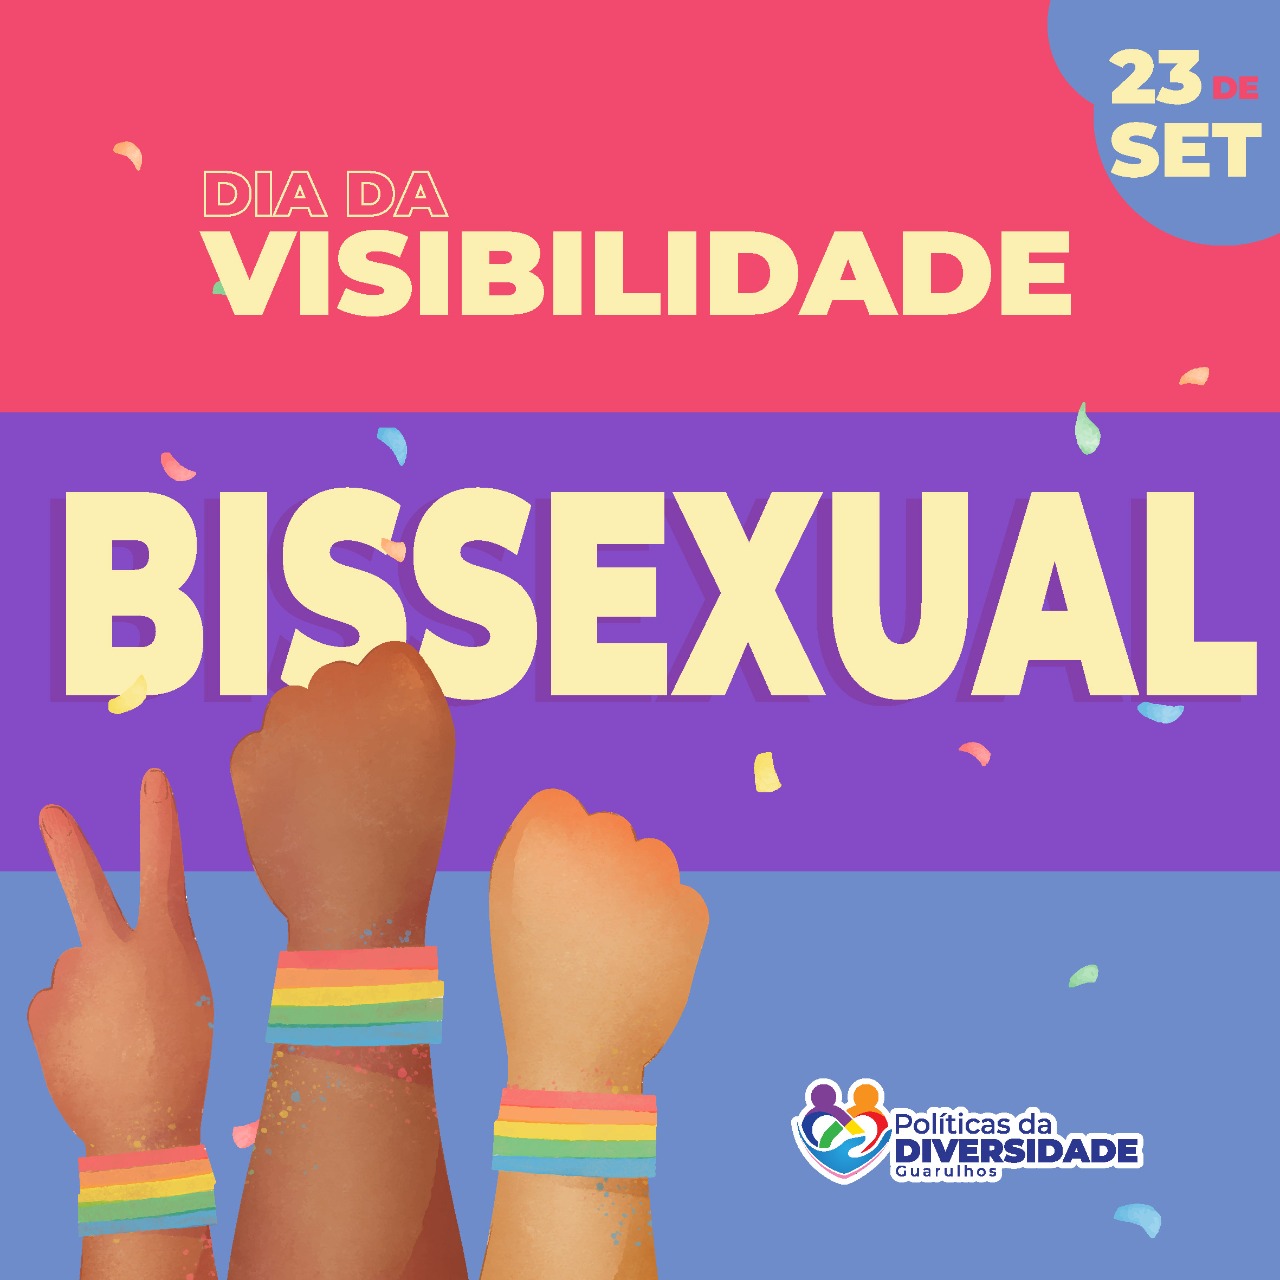 Subsecretaria Da Diversidade Combate Preconceitos No Dia Da Visibilidade Bissexual Prefeitura